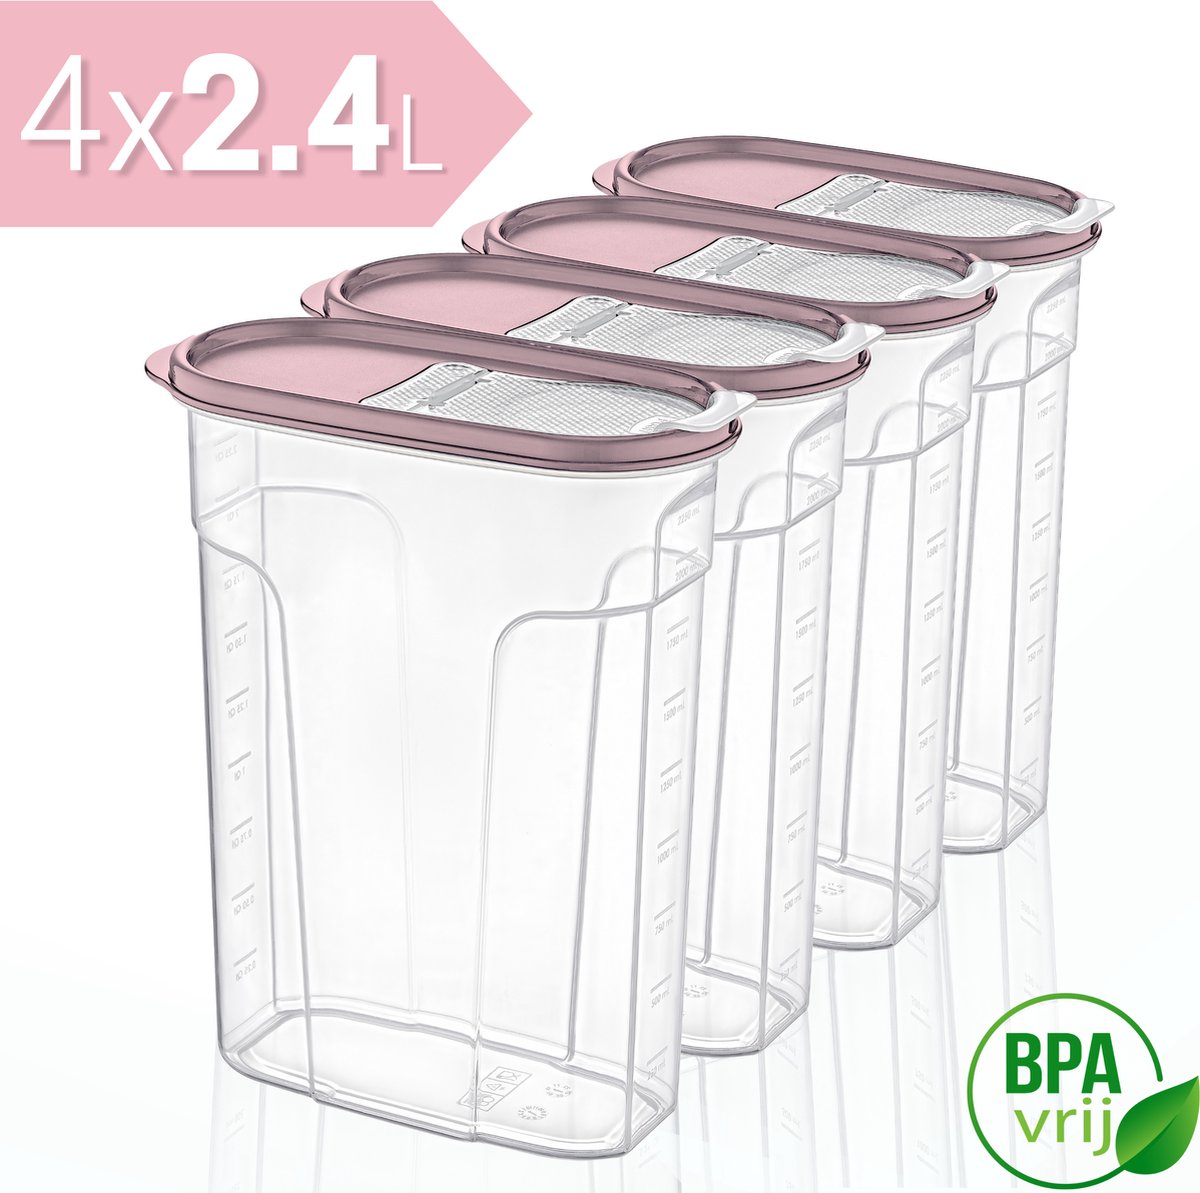 Voorraadpotten Set van 4 - 4x2.4L met rose deksel Voorraadbussen - Vershouddoos - 4 Stuks - BPA vrij - Kunststof